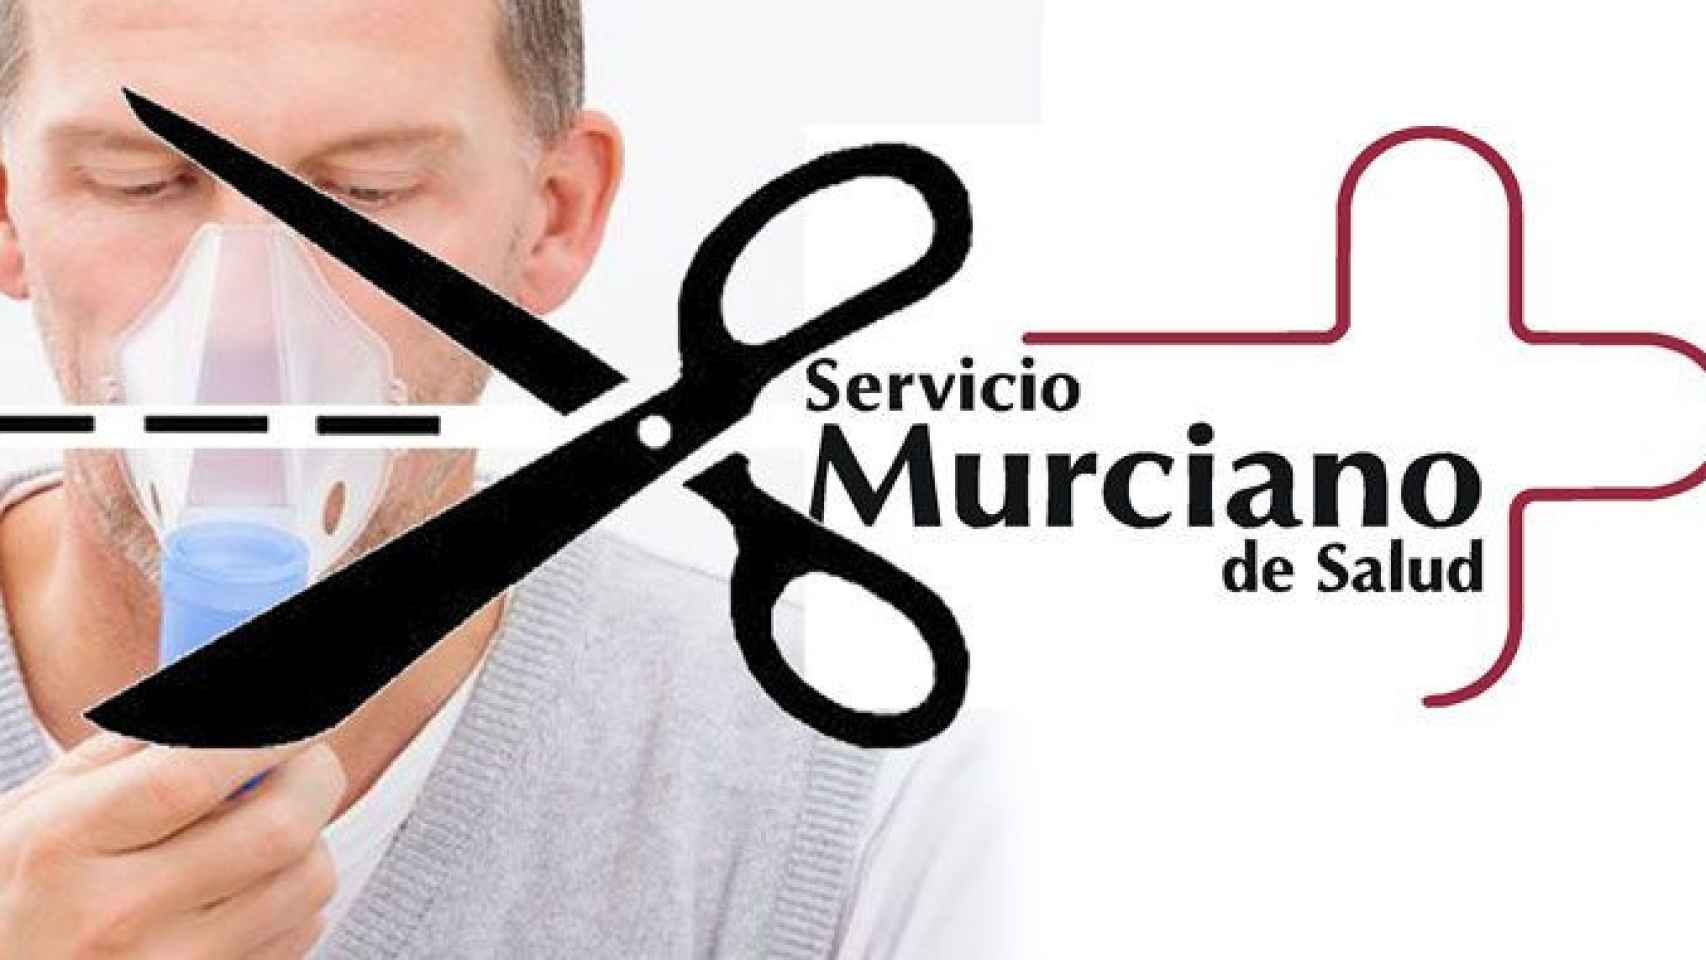 Un paciente de oxigenoterapia y el logo del Servicio Murciano de Salud con unas tijeras / FOTOMONTAJE CG